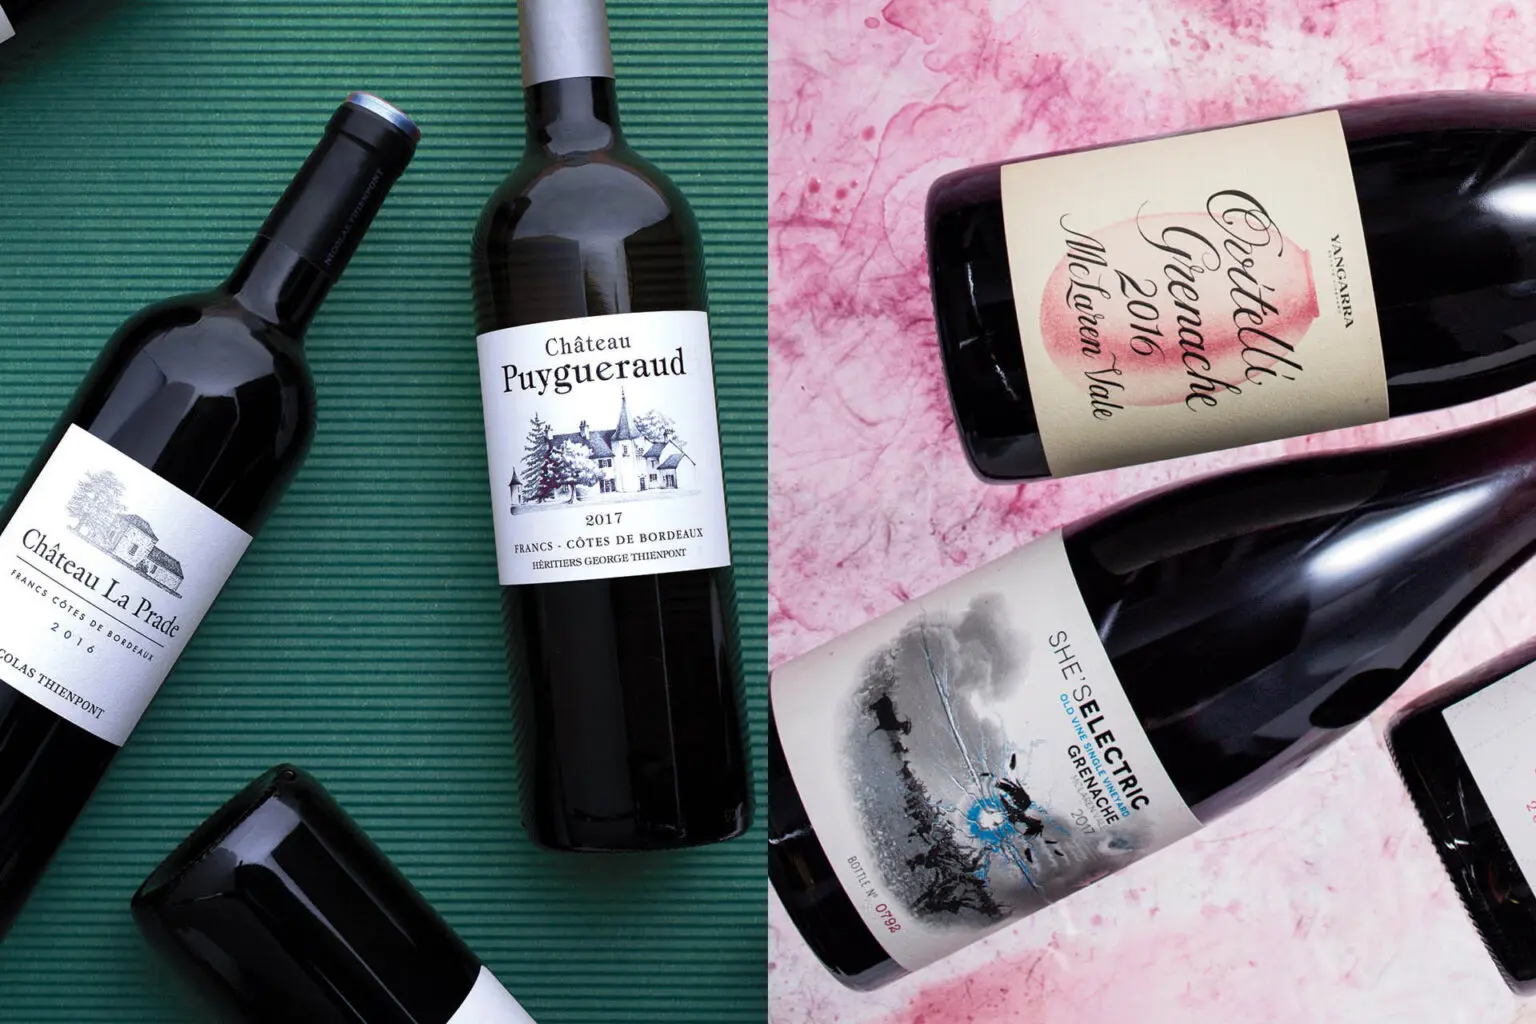 旧世界和新世界葡萄酒标签的经典范例。左图：梅格-巴戈特（Meg Baggott）；右图：萨拉-利特尔约翰（Sara Littlejohn）